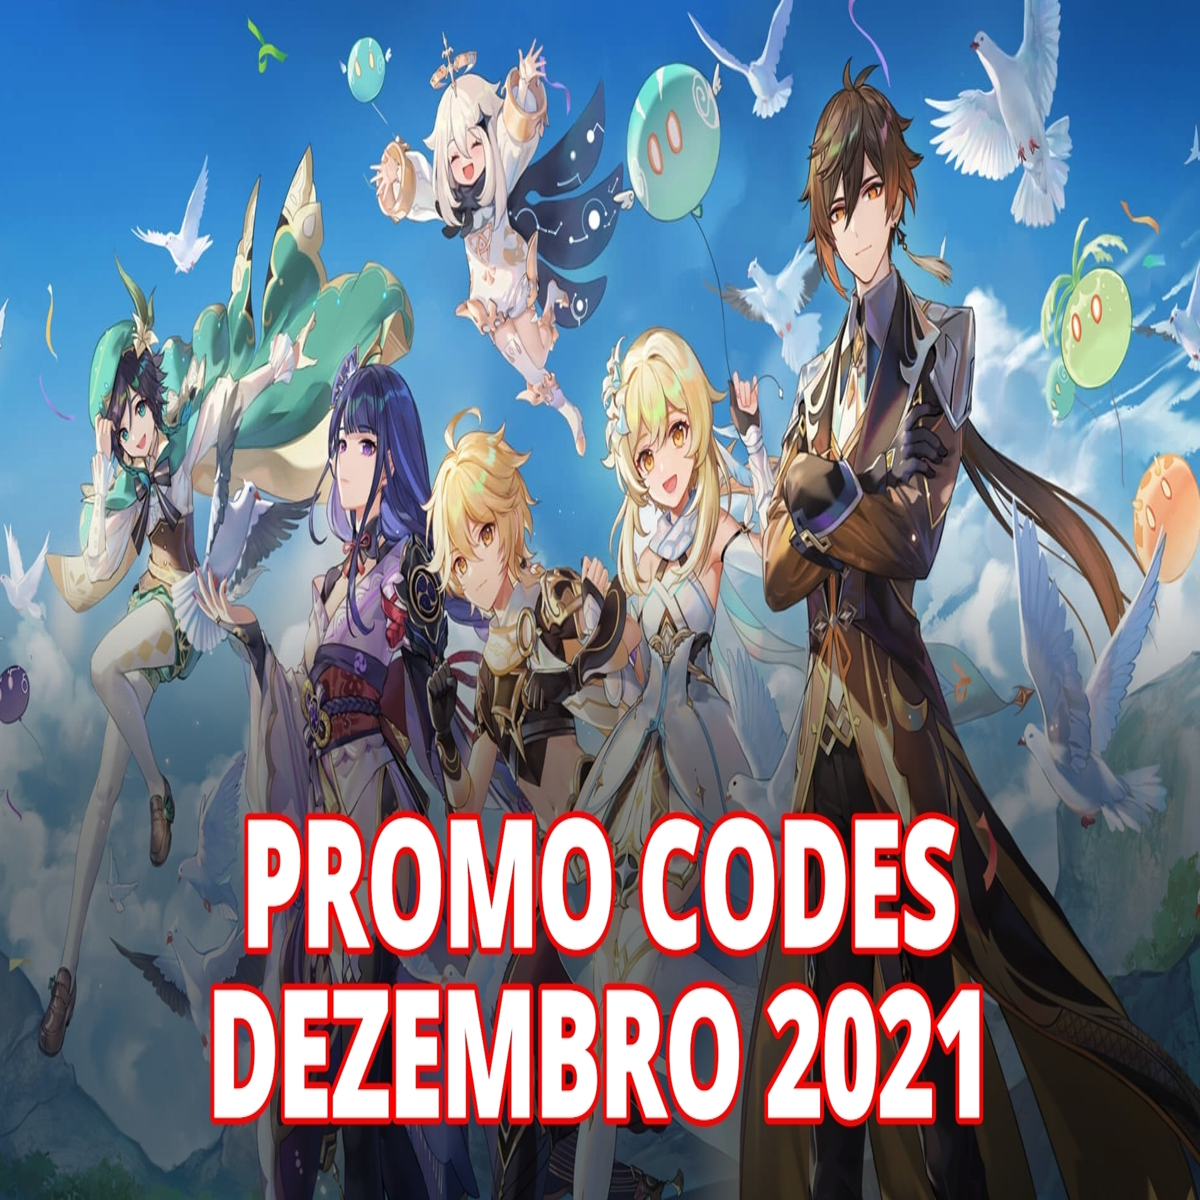 Genshin Impact - Promo Codes Janeiro 2022 - Obtém itens e